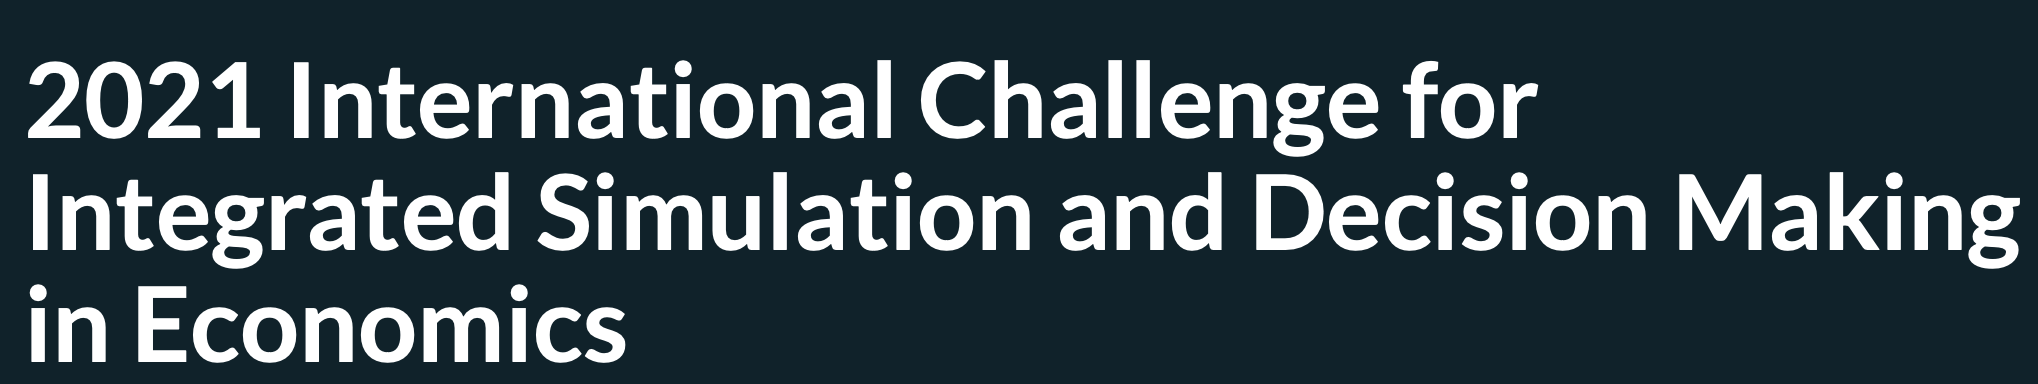 Международный конкурс 2021 года в области анализа данных и принятия решений в экономике